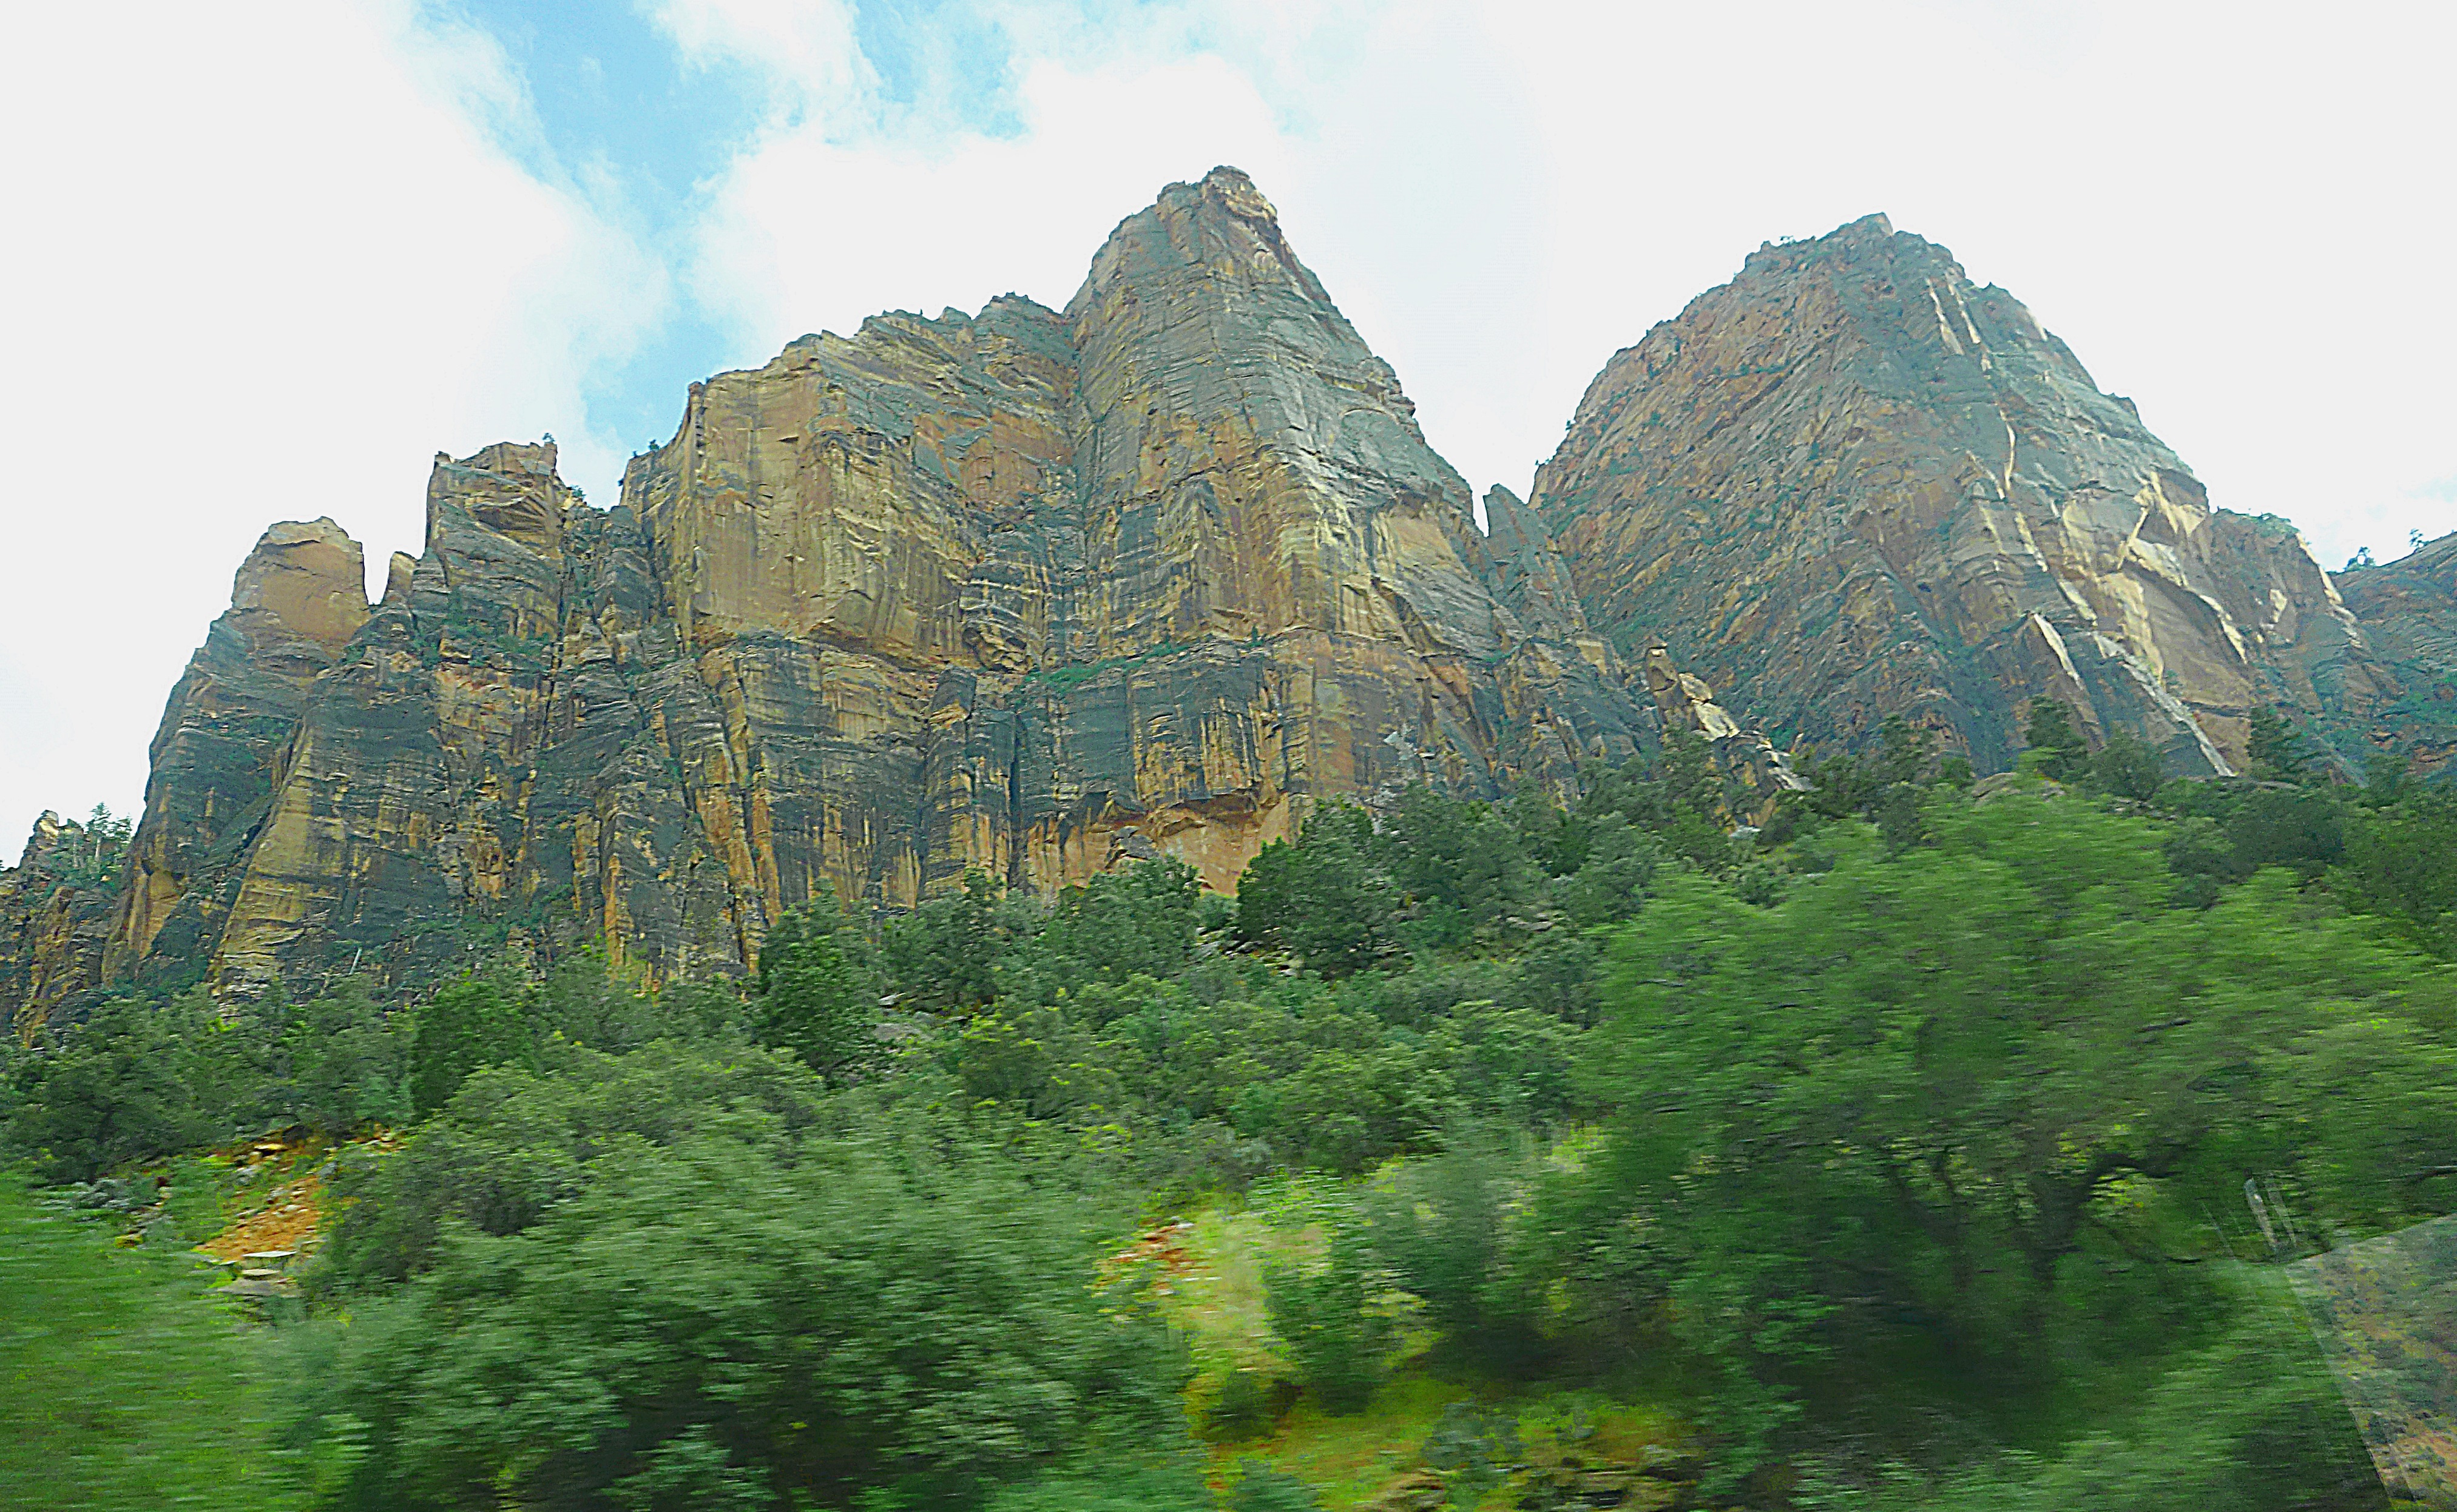 Скальные горы парка Зайон в Юте. Фото Морошкина В.В.